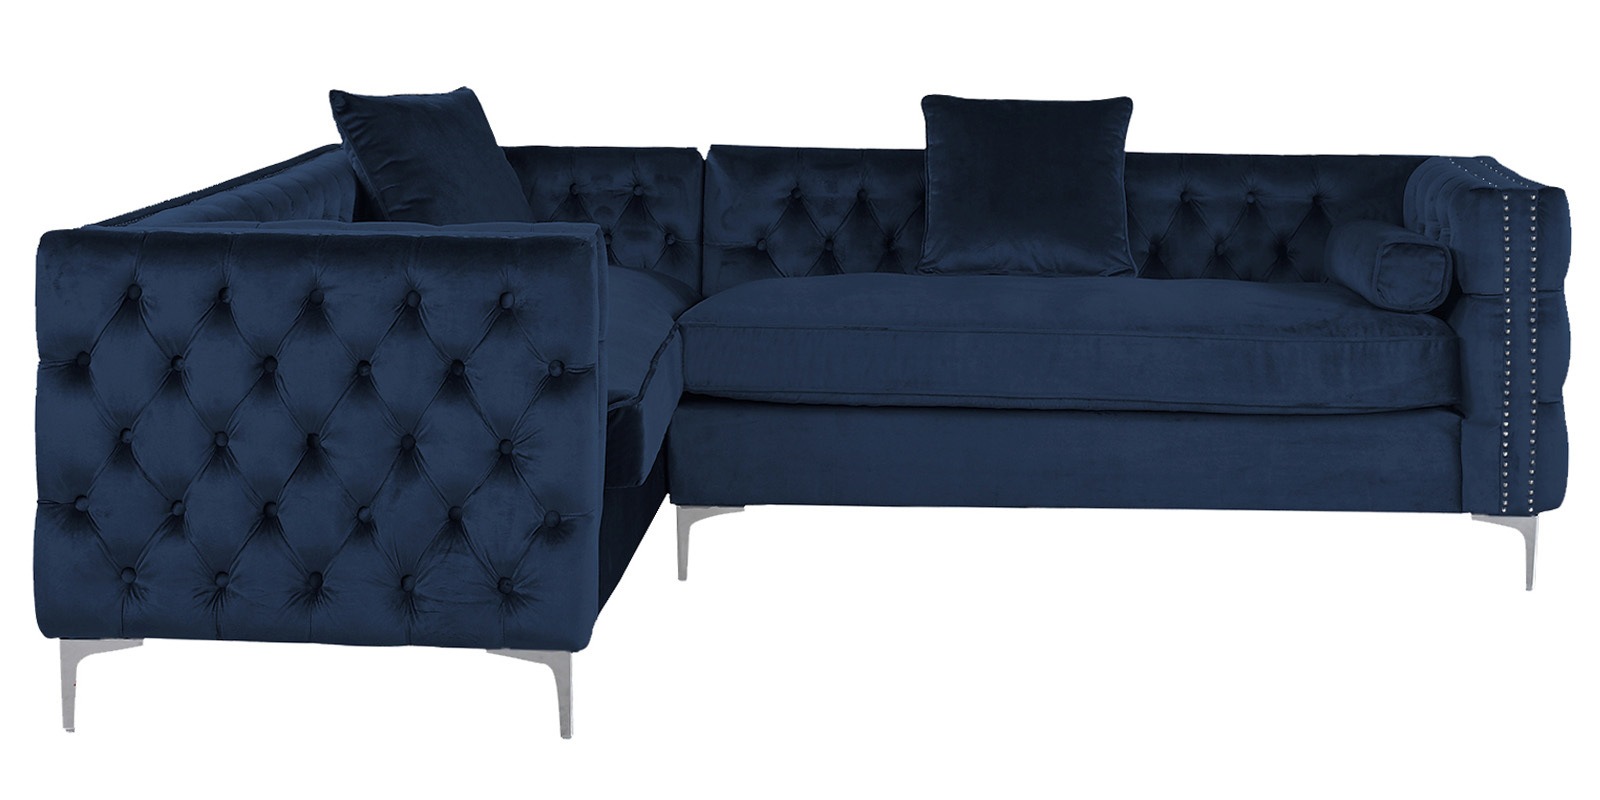 Tidafors Velvet Rhs Sectional Sofa In